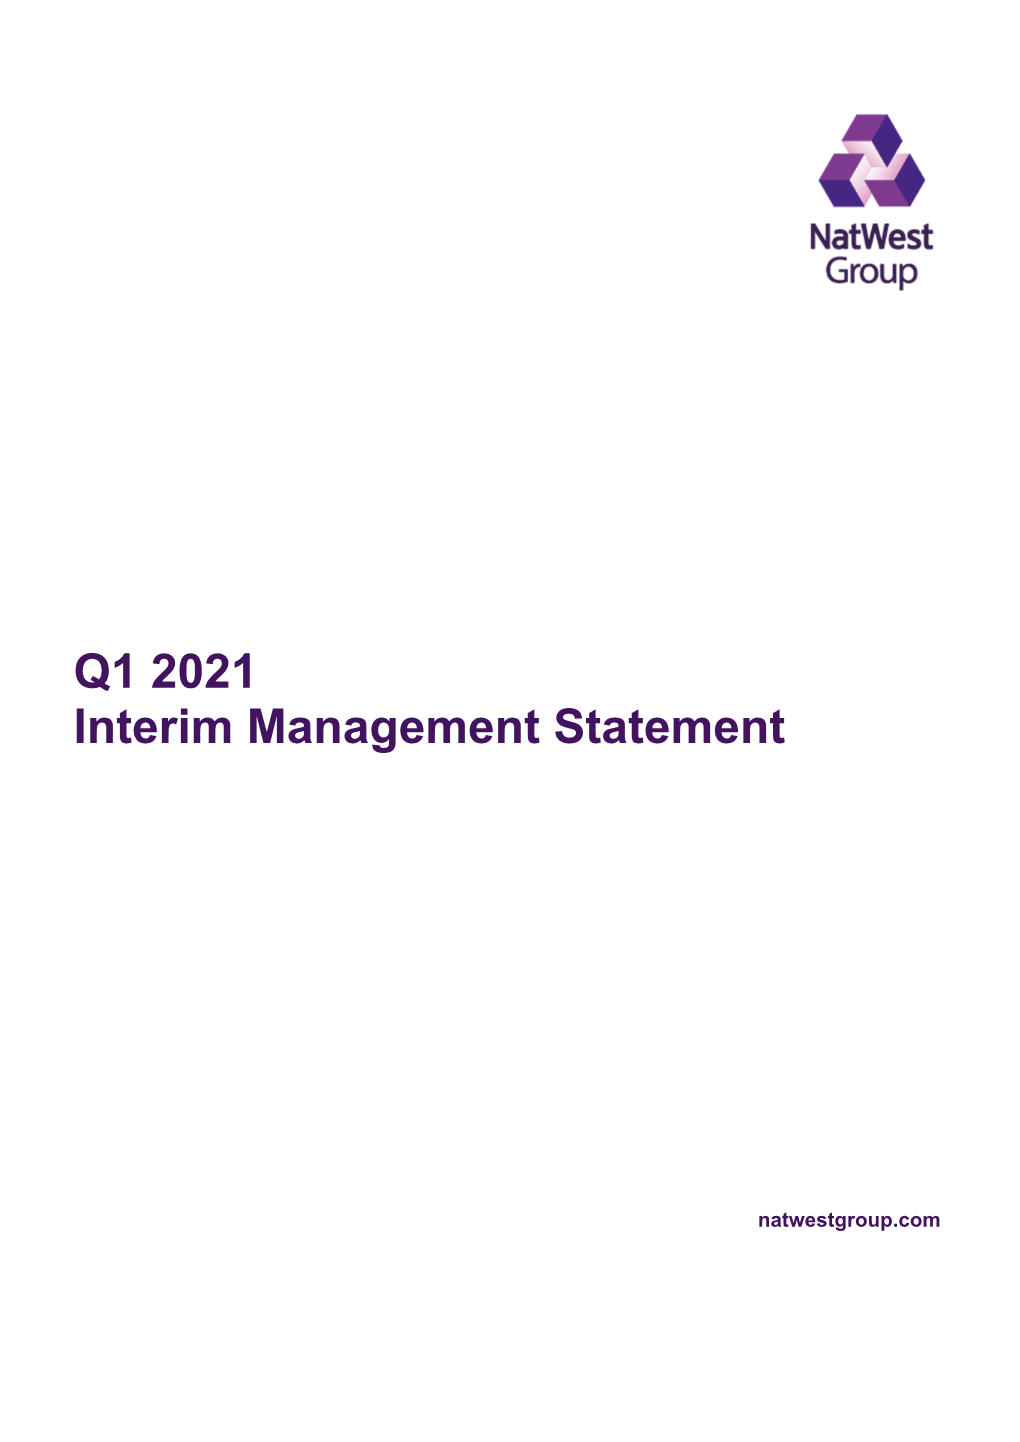 Q1 2021 Interim Management Statement